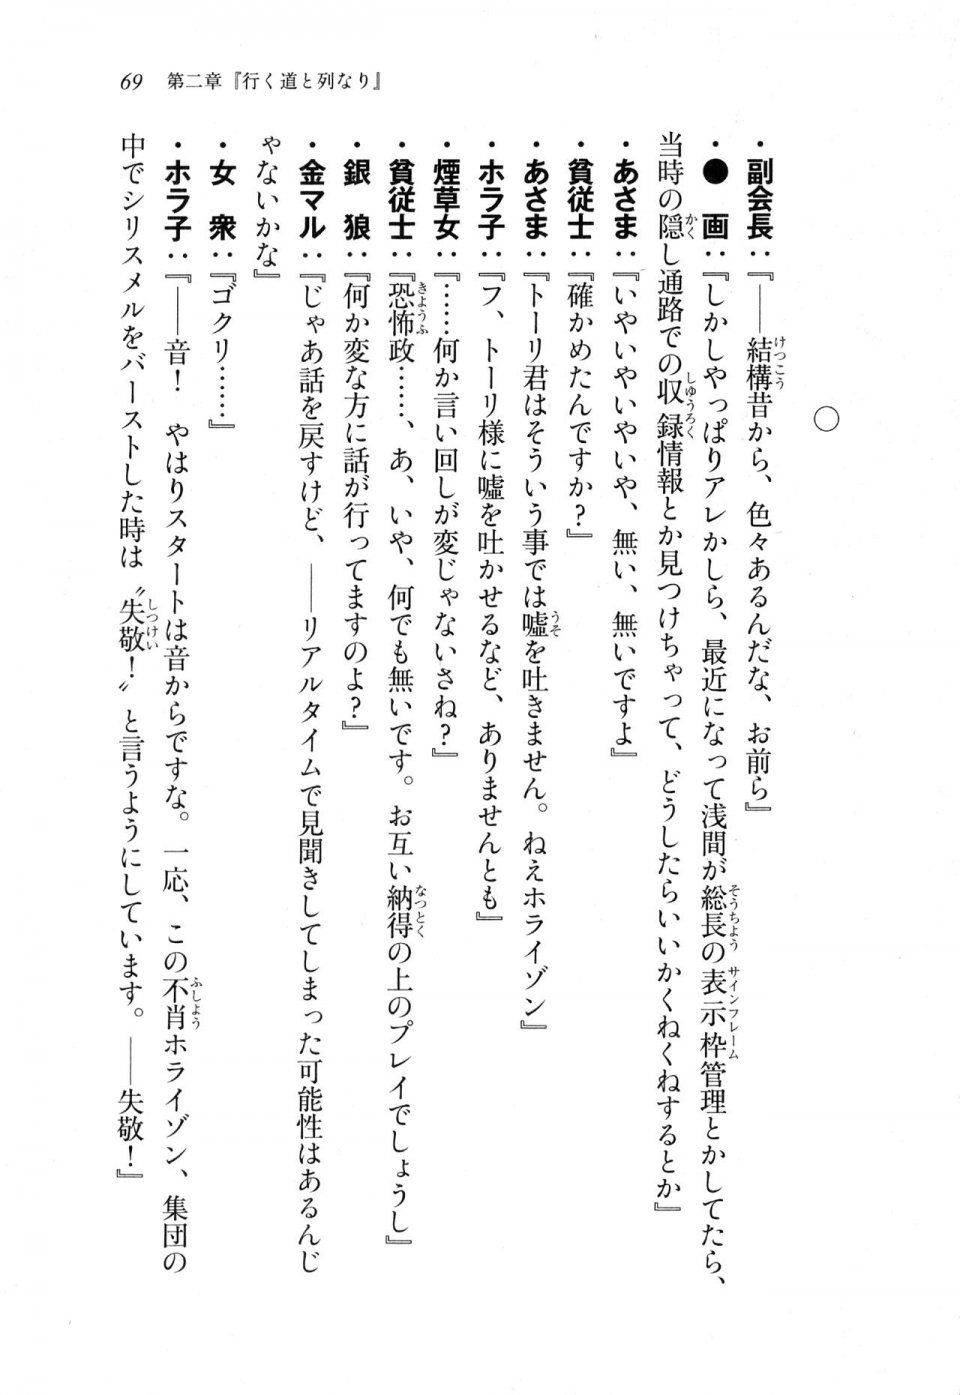 Kyoukai Senjou no Horizon LN Sidestory Vol 1 - Photo #67